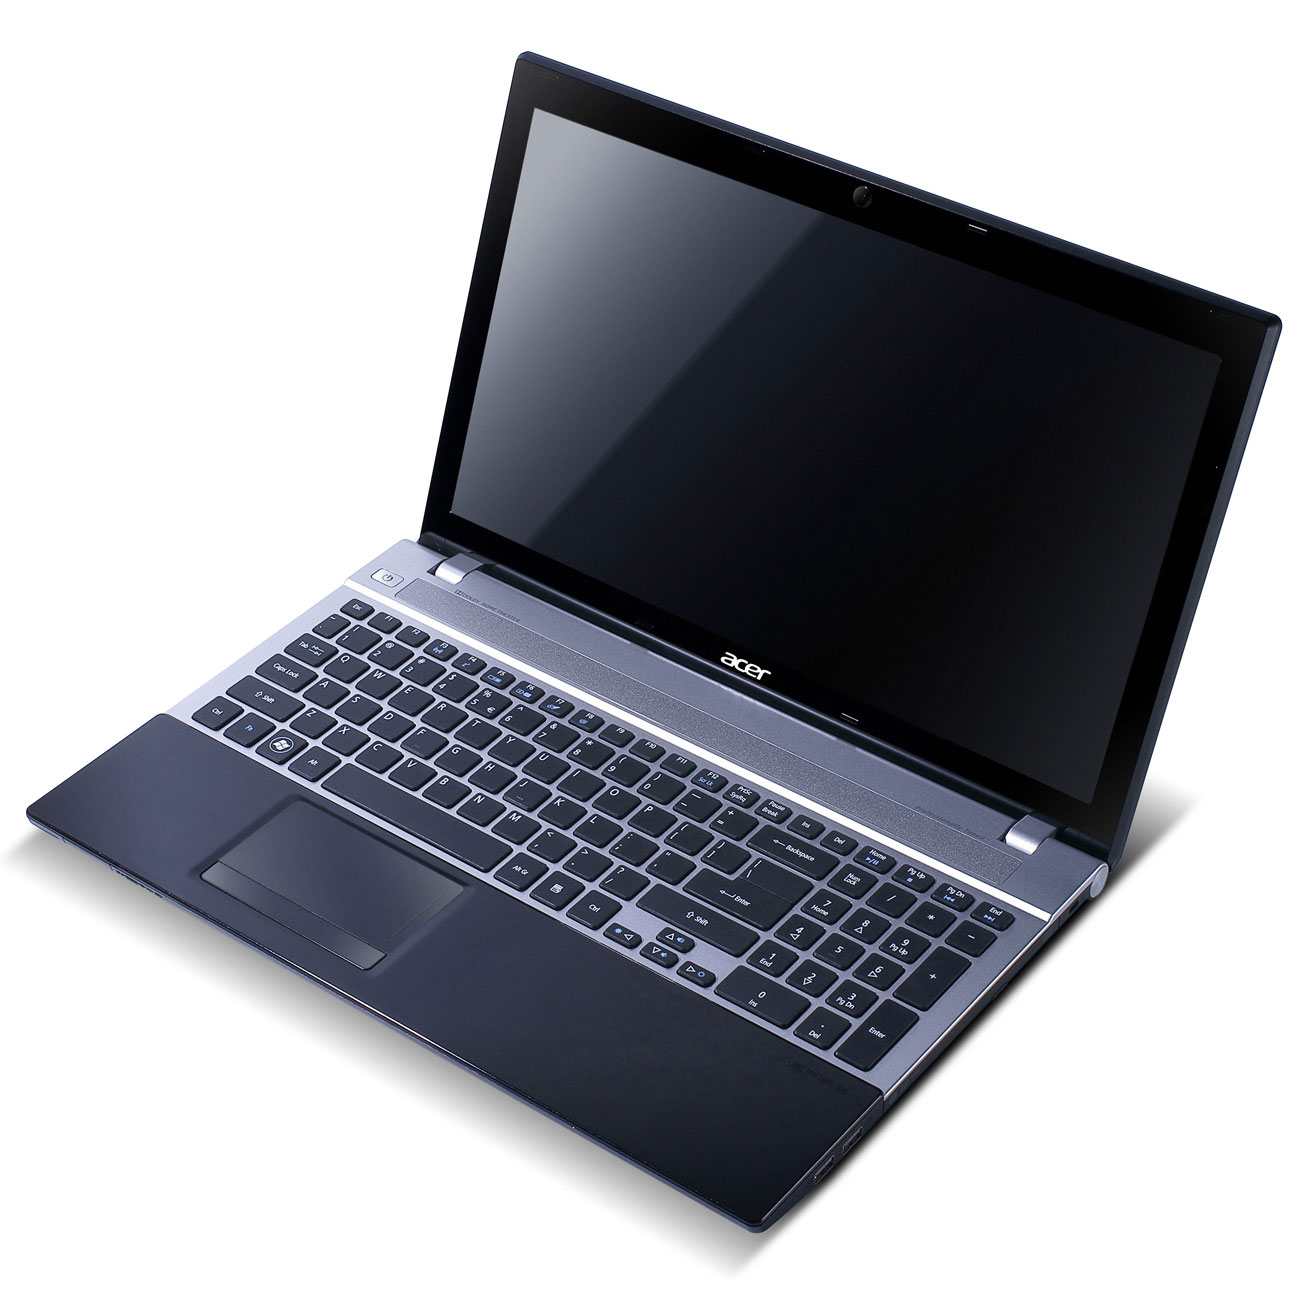 Acer Aspire V3-571G-53218G1TMakk - PC portable Acer sur